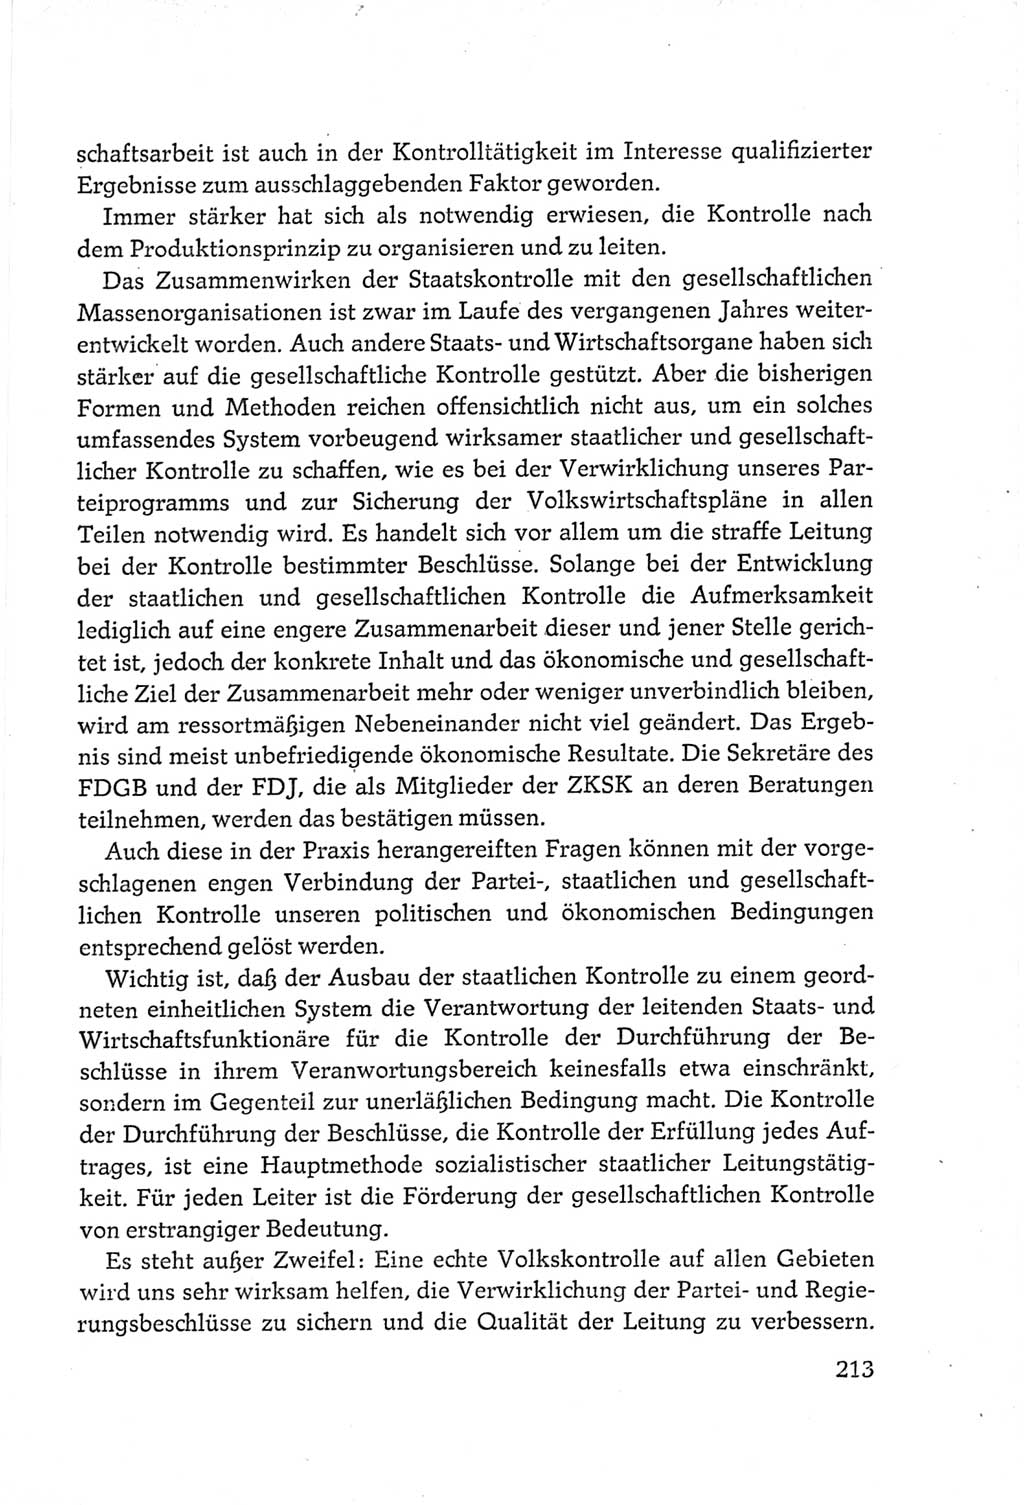 Protokoll der Verhandlungen des Ⅵ. Parteitages der Sozialistischen Einheitspartei Deutschlands (SED) [Deutsche Demokratische Republik (DDR)] 1963, Band Ⅲ, Seite 213 (Prot. Verh. Ⅵ. PT SED DDR 1963, Bd. Ⅲ, S. 213)